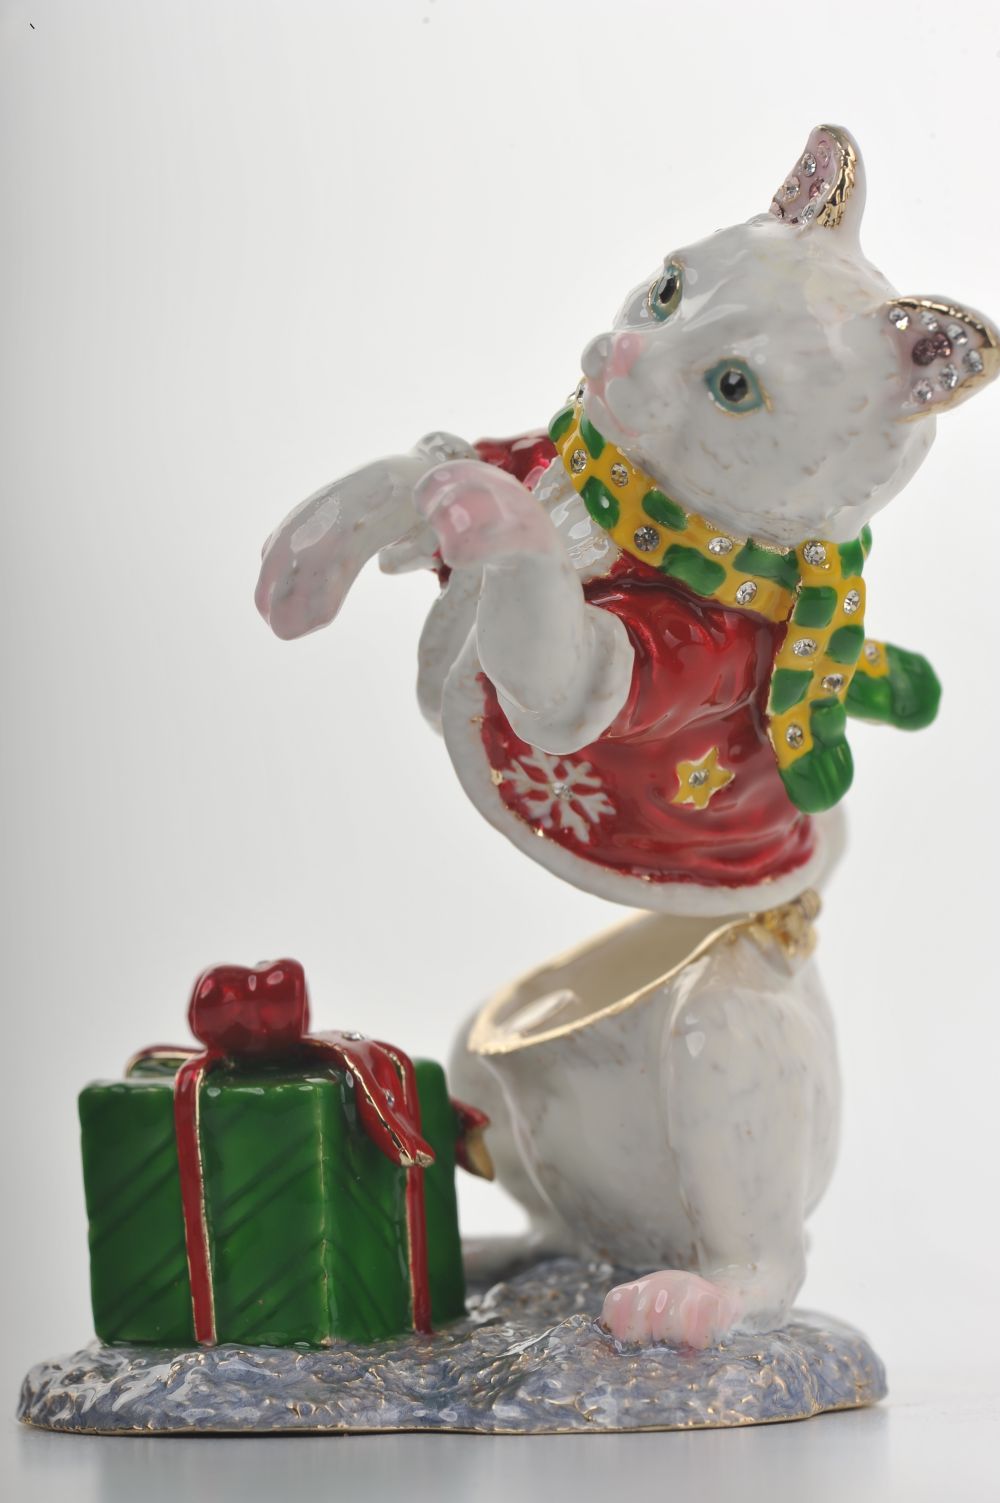 Keren Kopal Christmas Cat with Presents  100.00